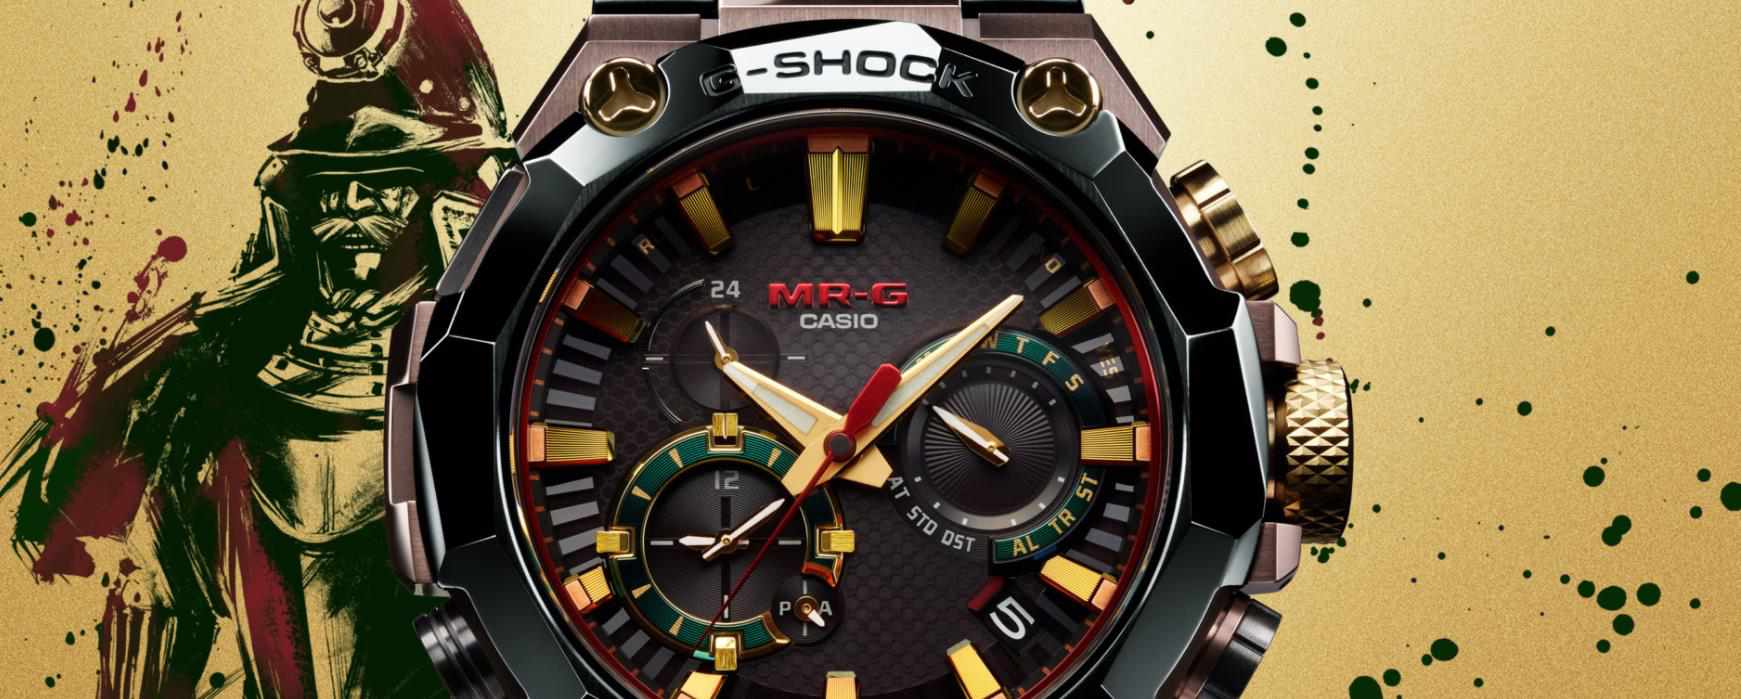 Swiss Watch Brands為復古品牌注入新血液